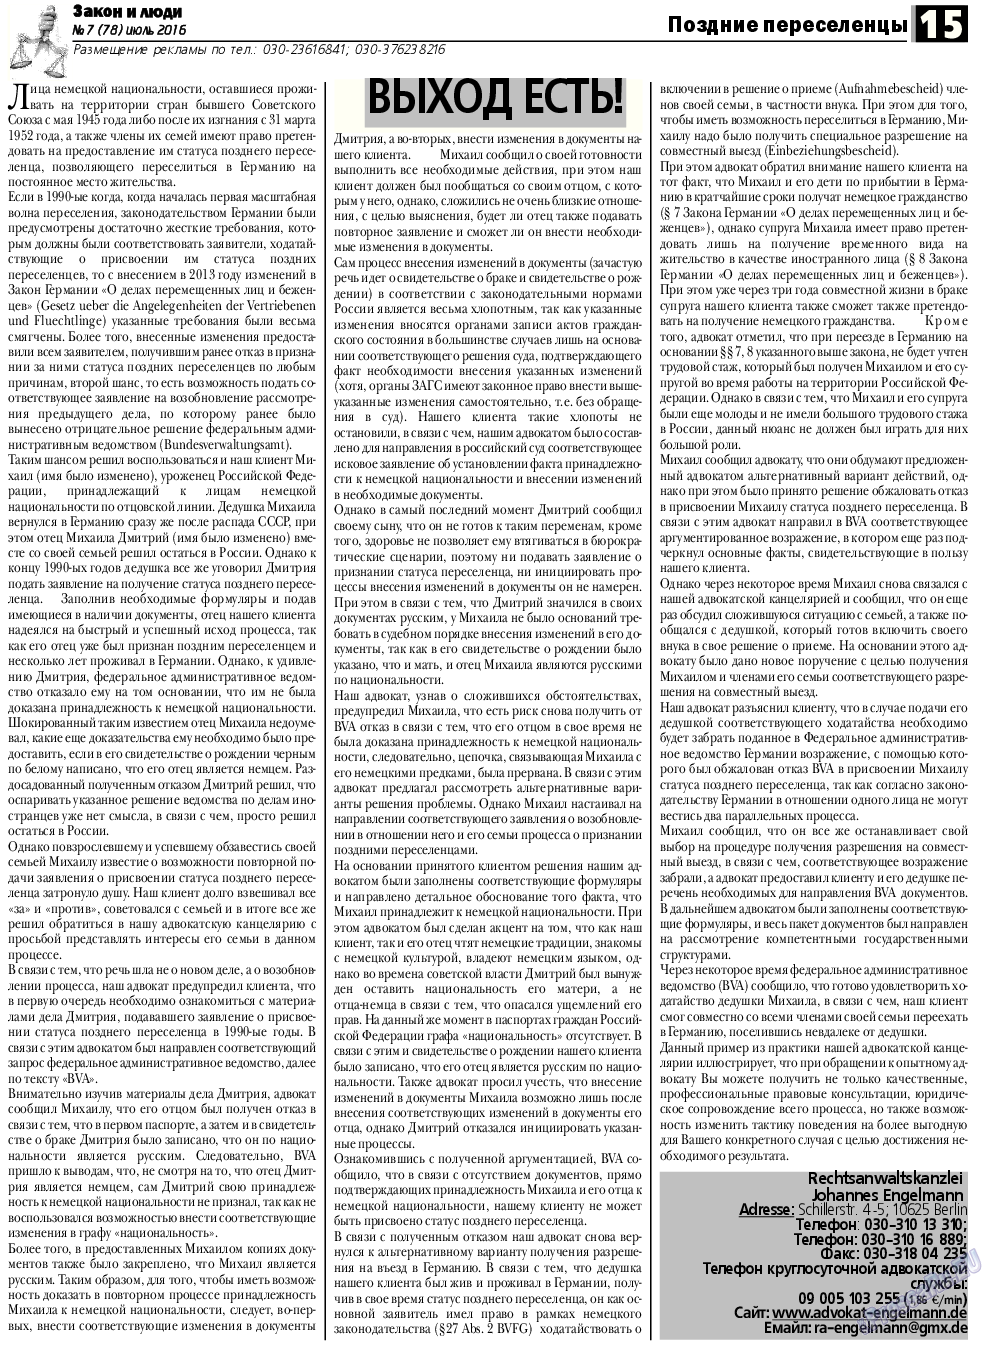 Закон и люди, газета. 2016 №7 стр.15